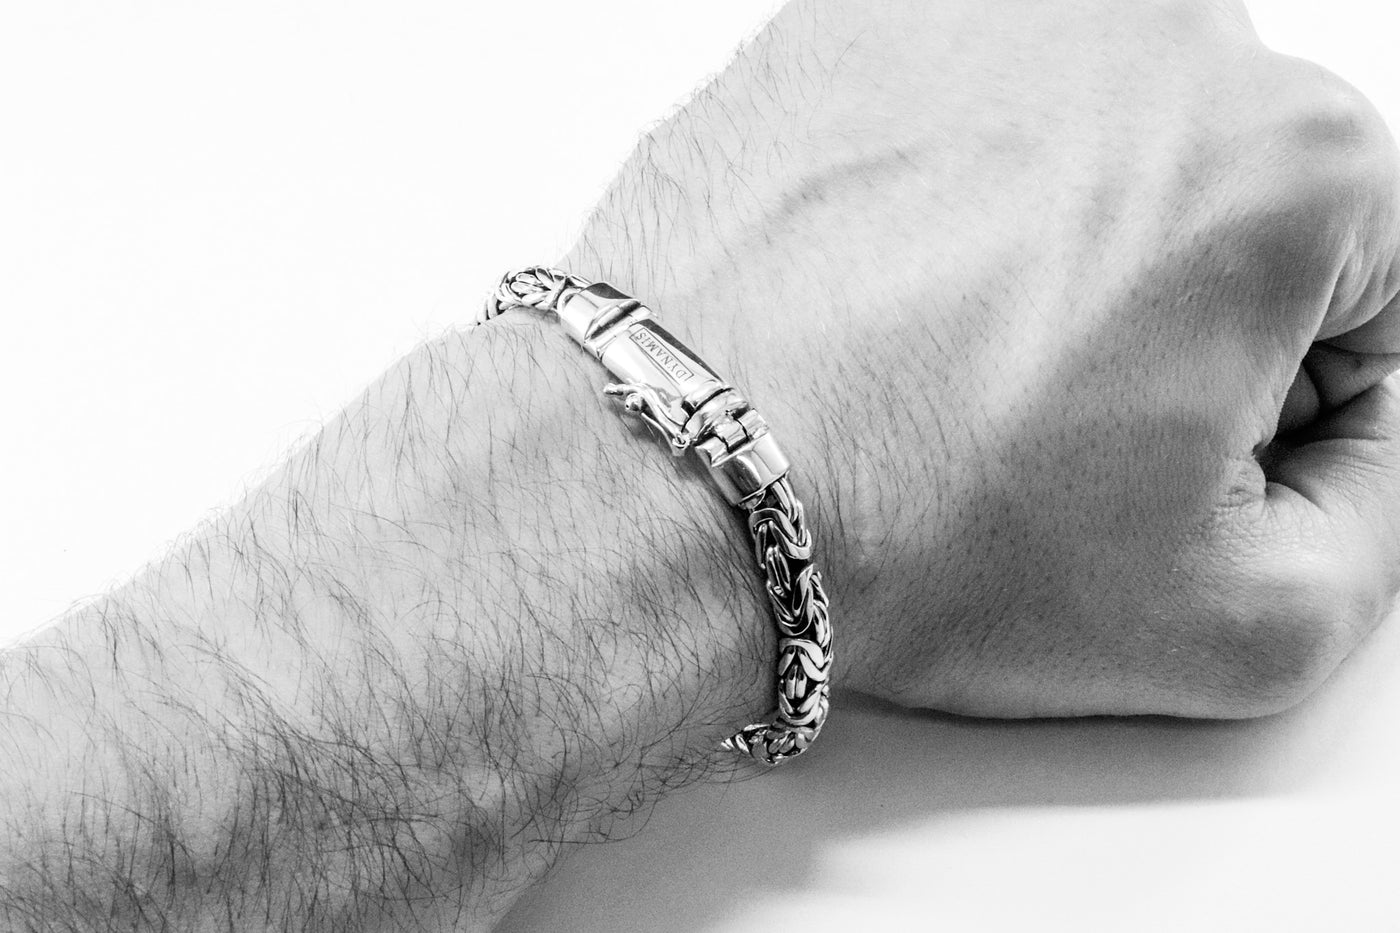 Byzantine silver bracelet | Oval